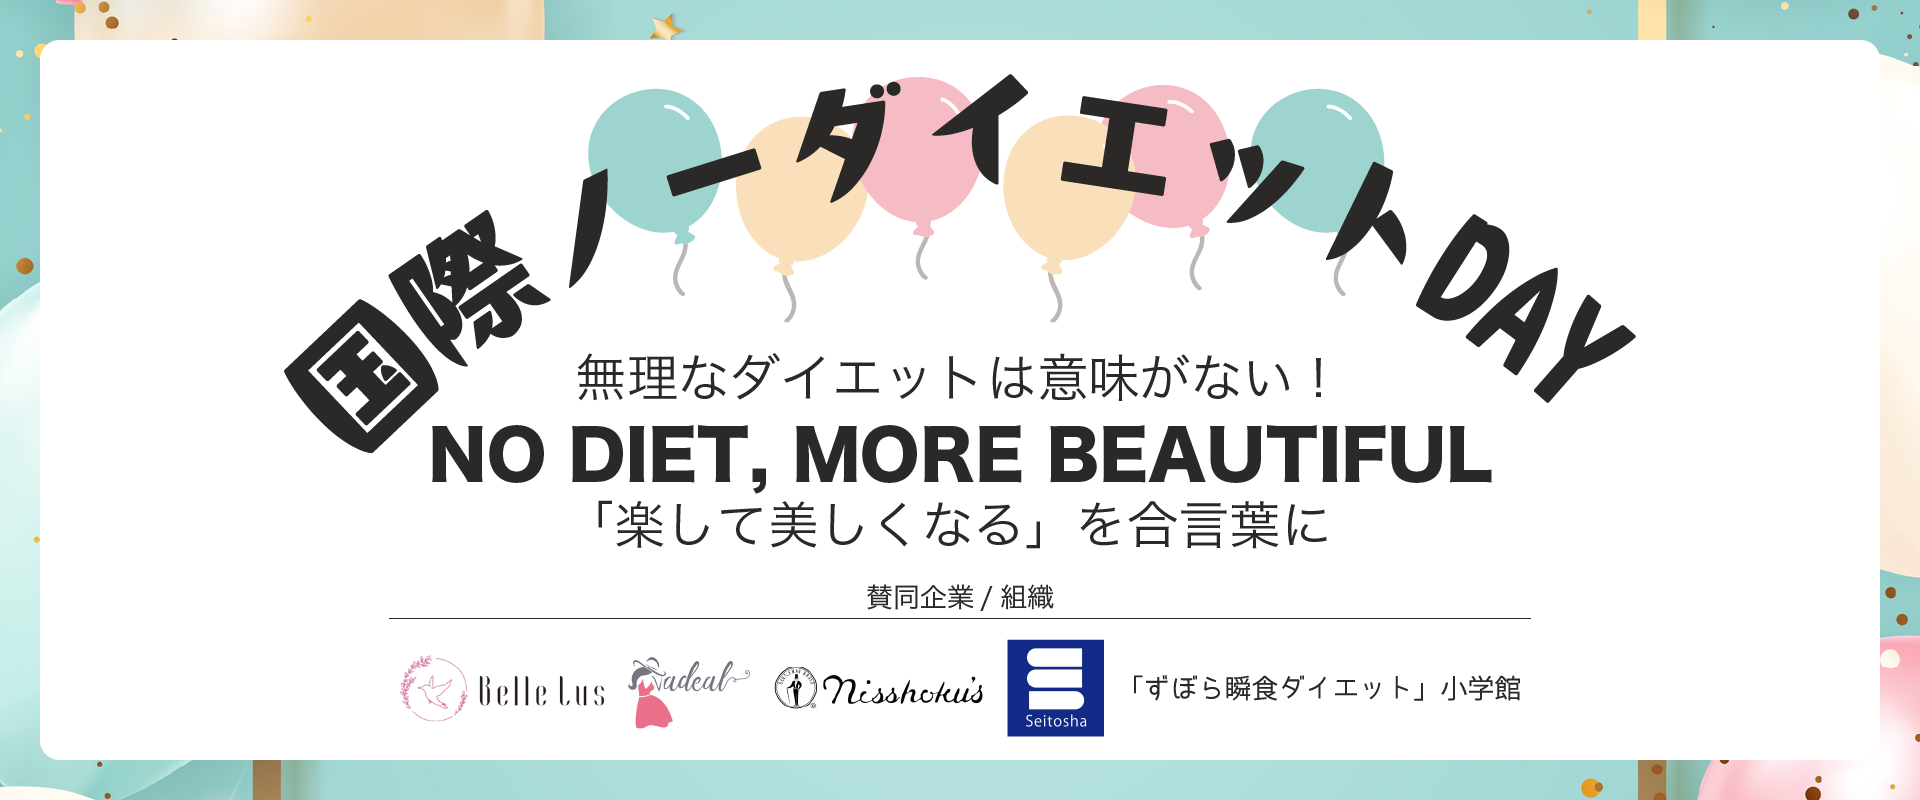 5/6は“国際ノーダイエットデー”　
無理なダイエットを世の中からなくす
「NO DIET MORE BEAYTIFUL」啓発キャンペーンを開催